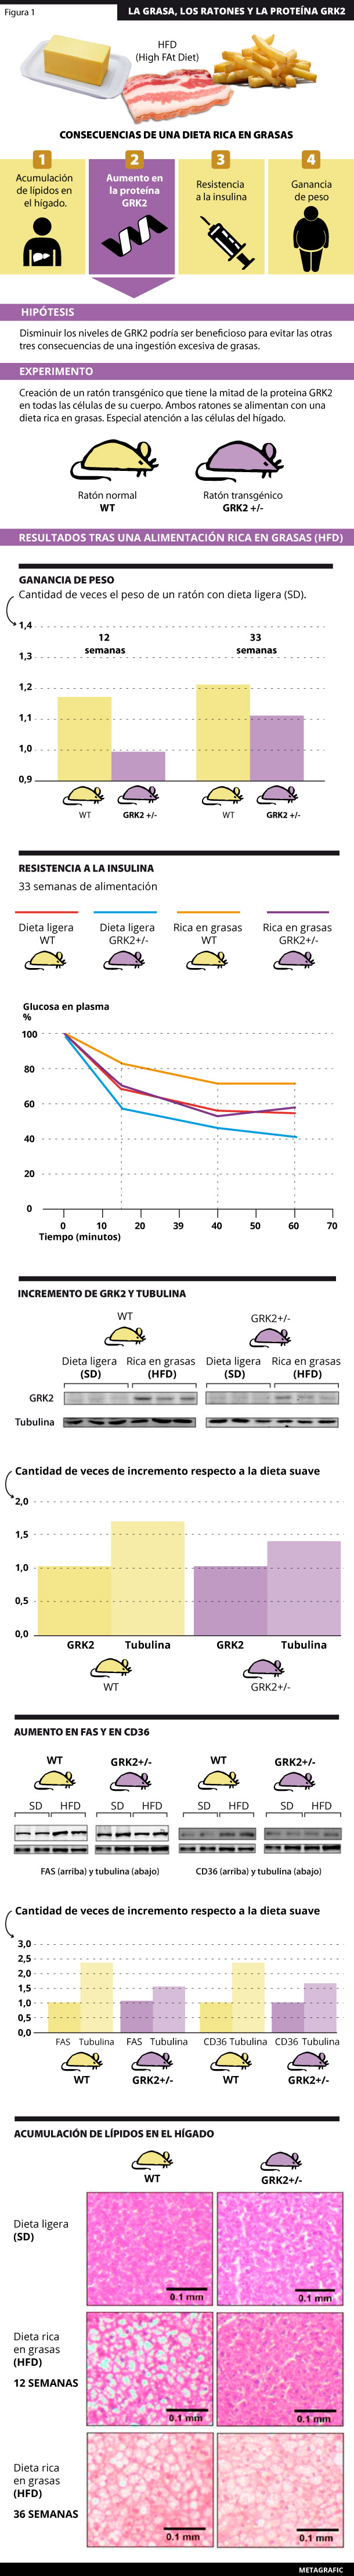 Se muestran las consecuencias encontradas al alimentar a los ratones normales (WT) y transgénicos (GRK2+/-) con una dieta alta en grasa. Estas se pueden resumir en: aumento de peso, desarrollo de resistencia a la insulina, aumento en la acumulación de lípidos en el hígado (debido al aumento en FAS y CD36) e incremento en los niveles de GRK2 en el hígado. 